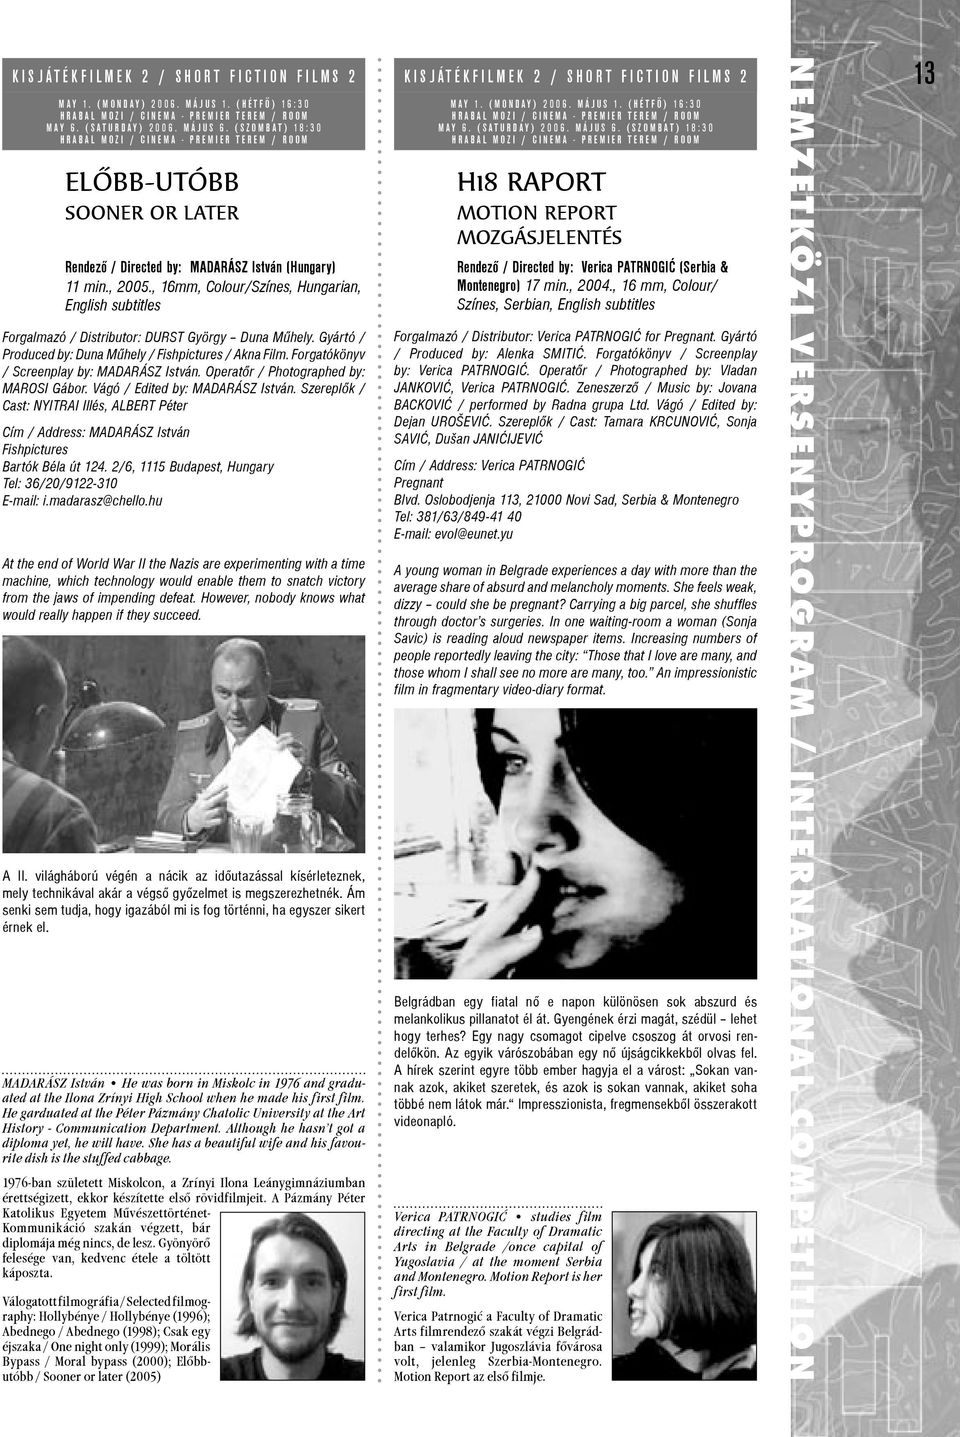 , 16mm, Colour/Színes, Hungarian, English subtitles Forgalmazó / Distributor: DURST György Duna Mûhely. Gyártó / Produced by: Duna Mûhely / Fishpictures / Akna Film.